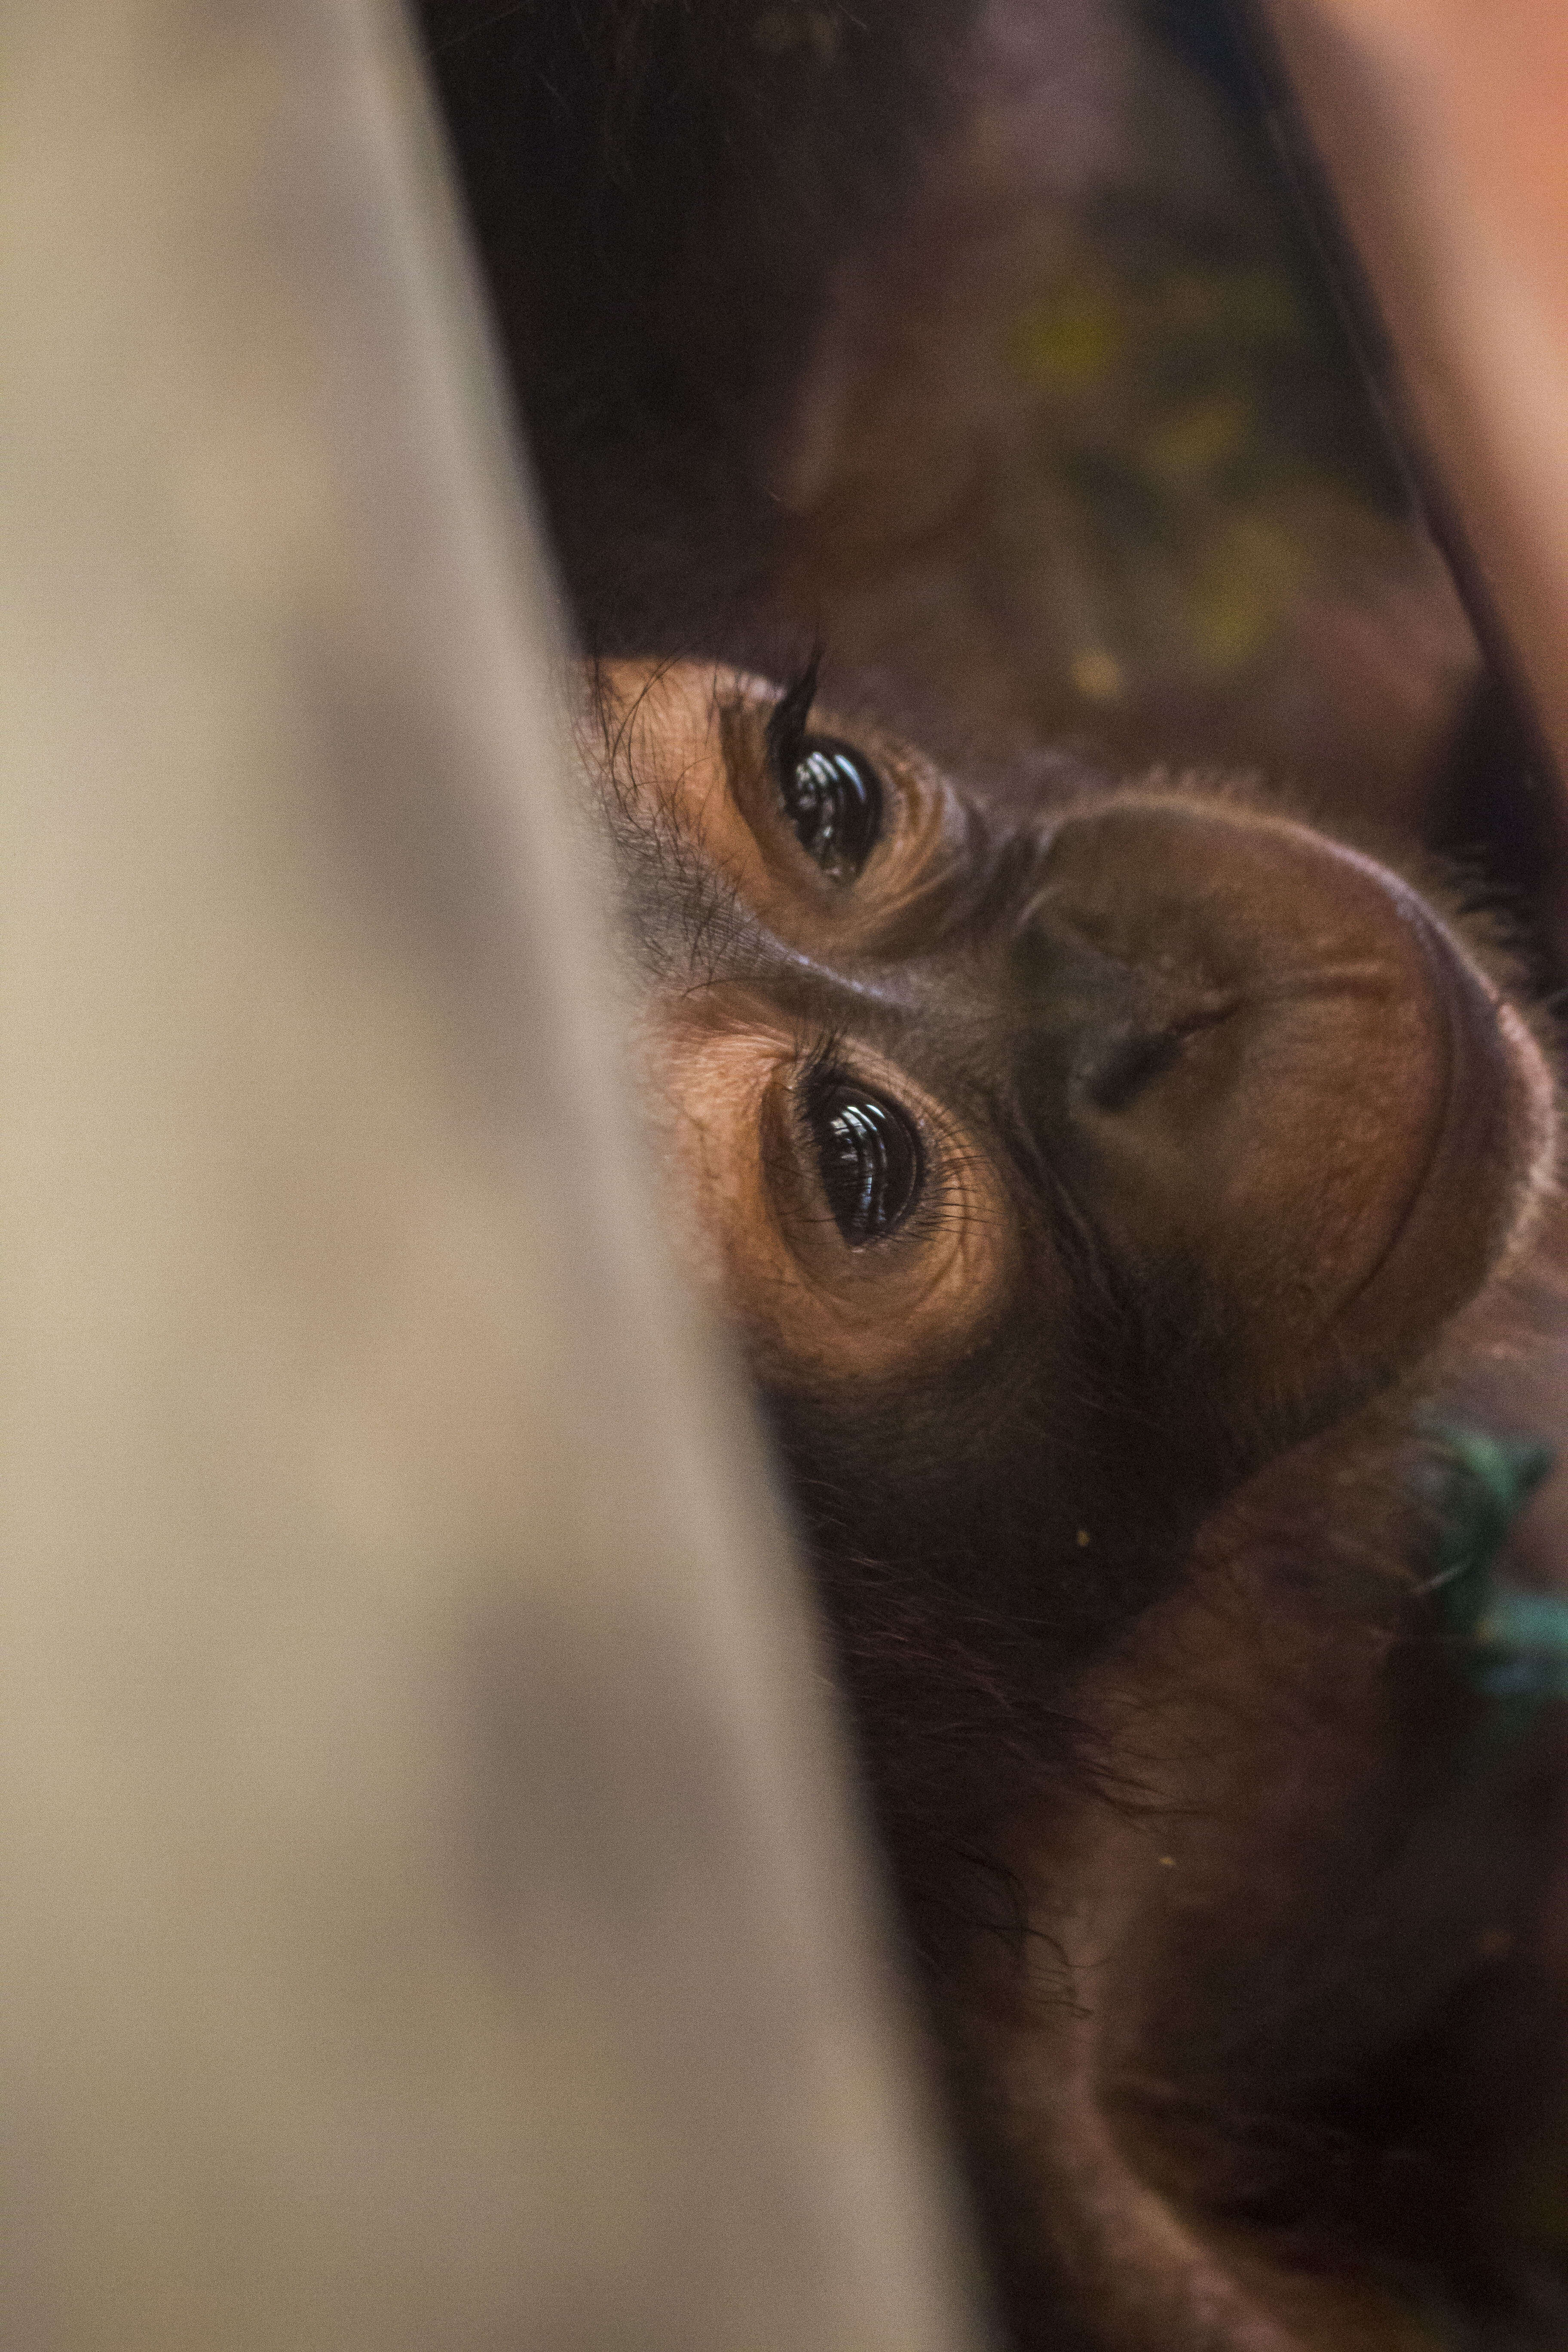 Baby orangutan inside wooden crate